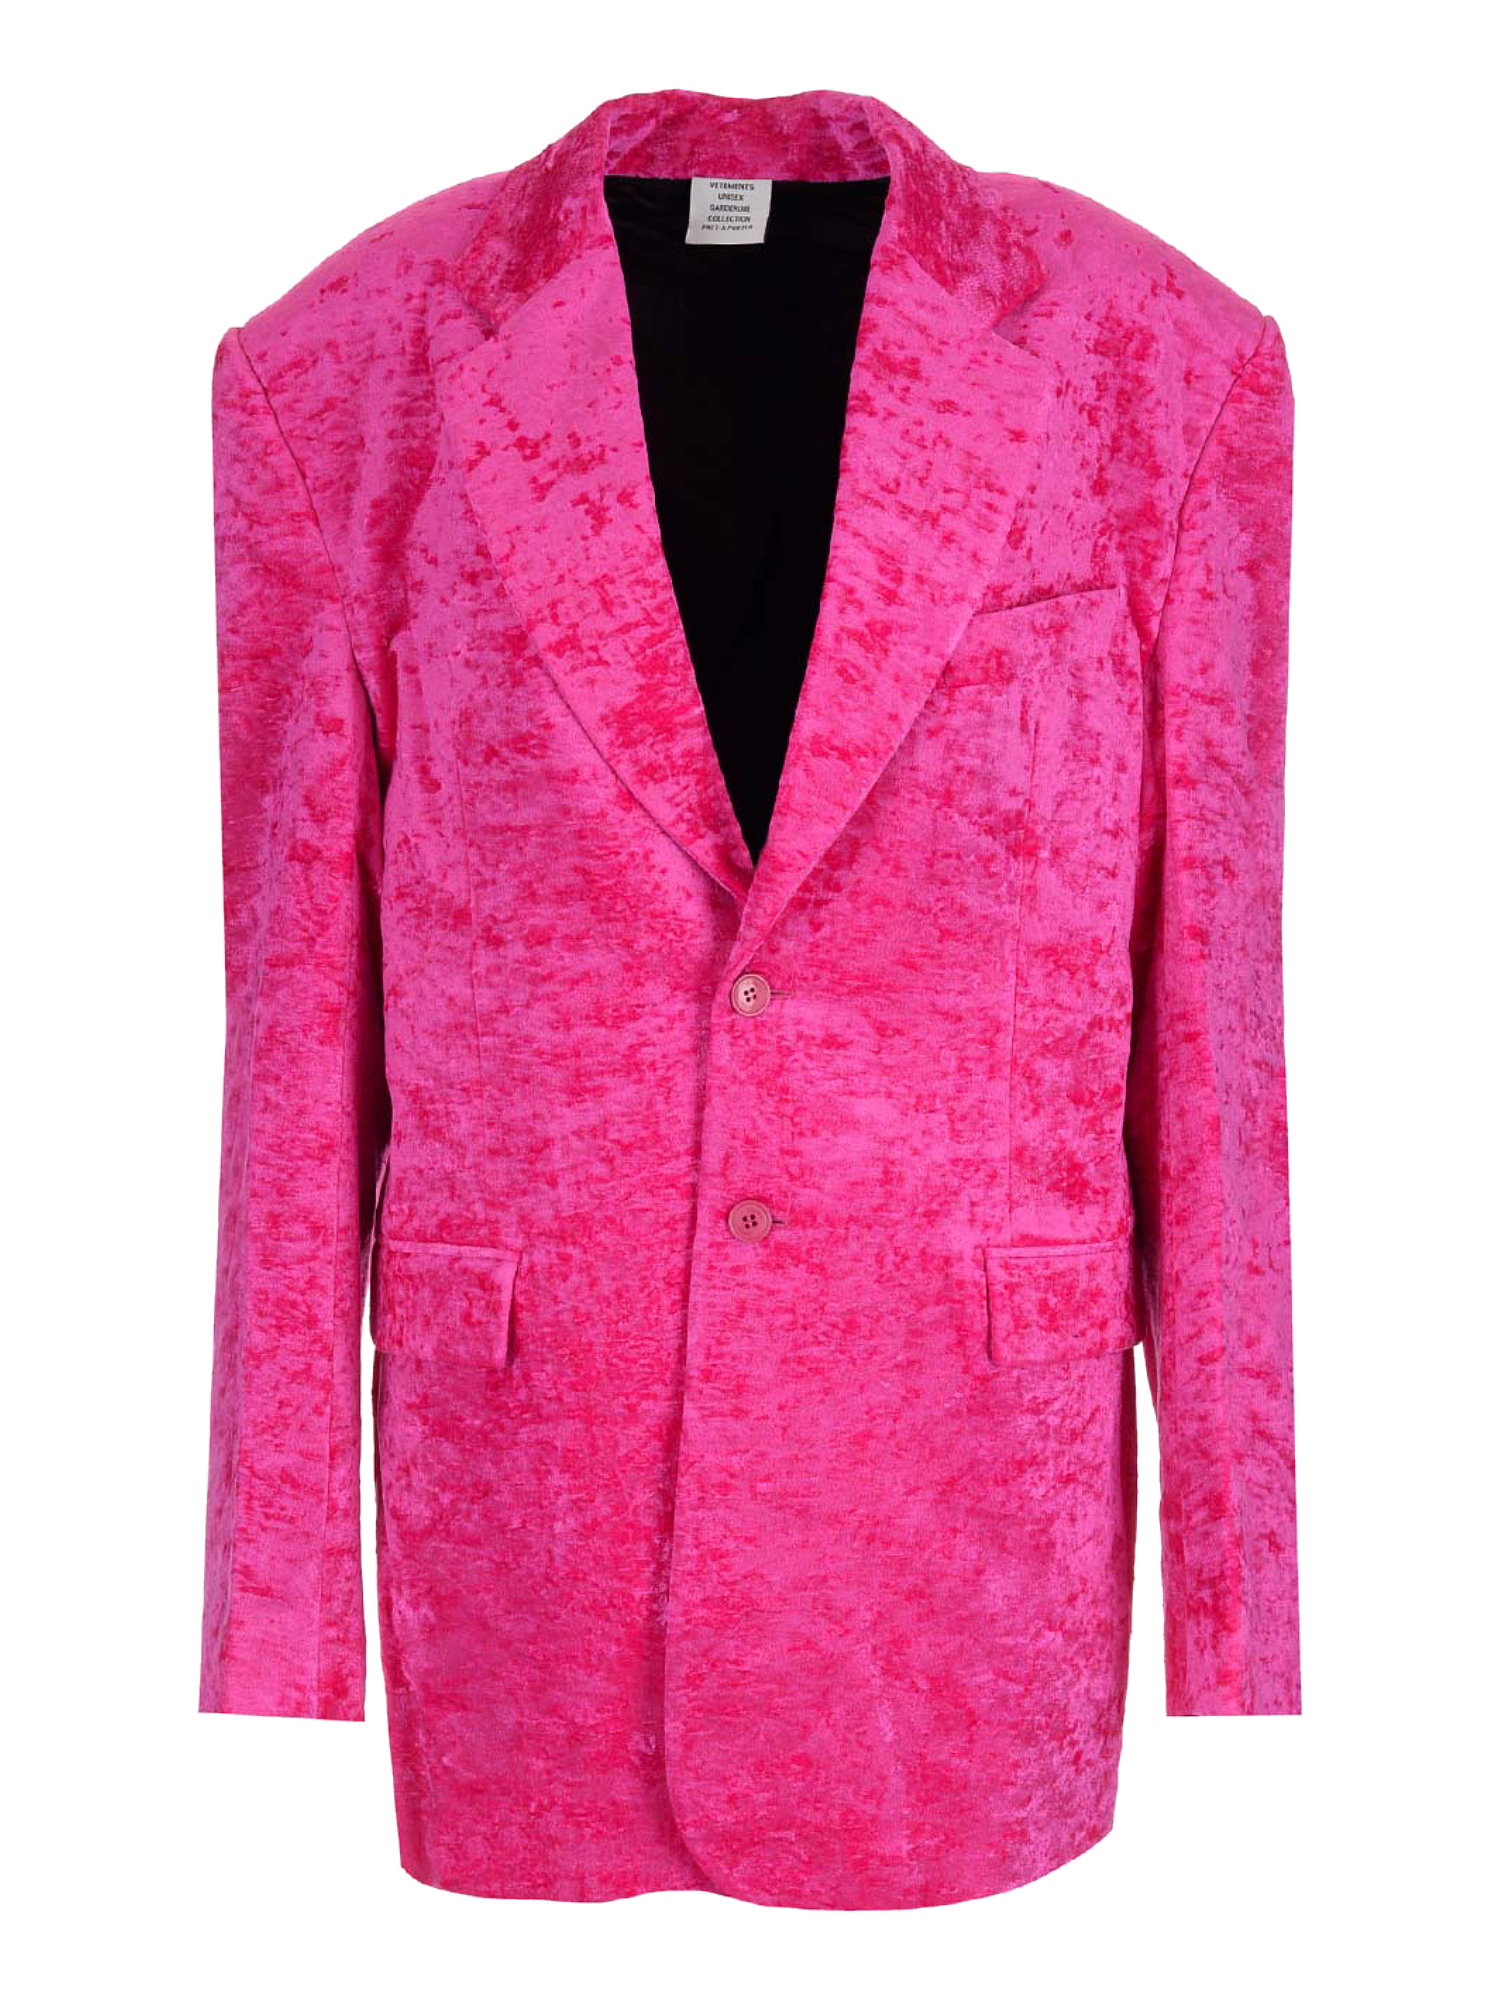 Vestes Pour Femme - Vetements - En Synthetic Fibers Pink - Taille:  -